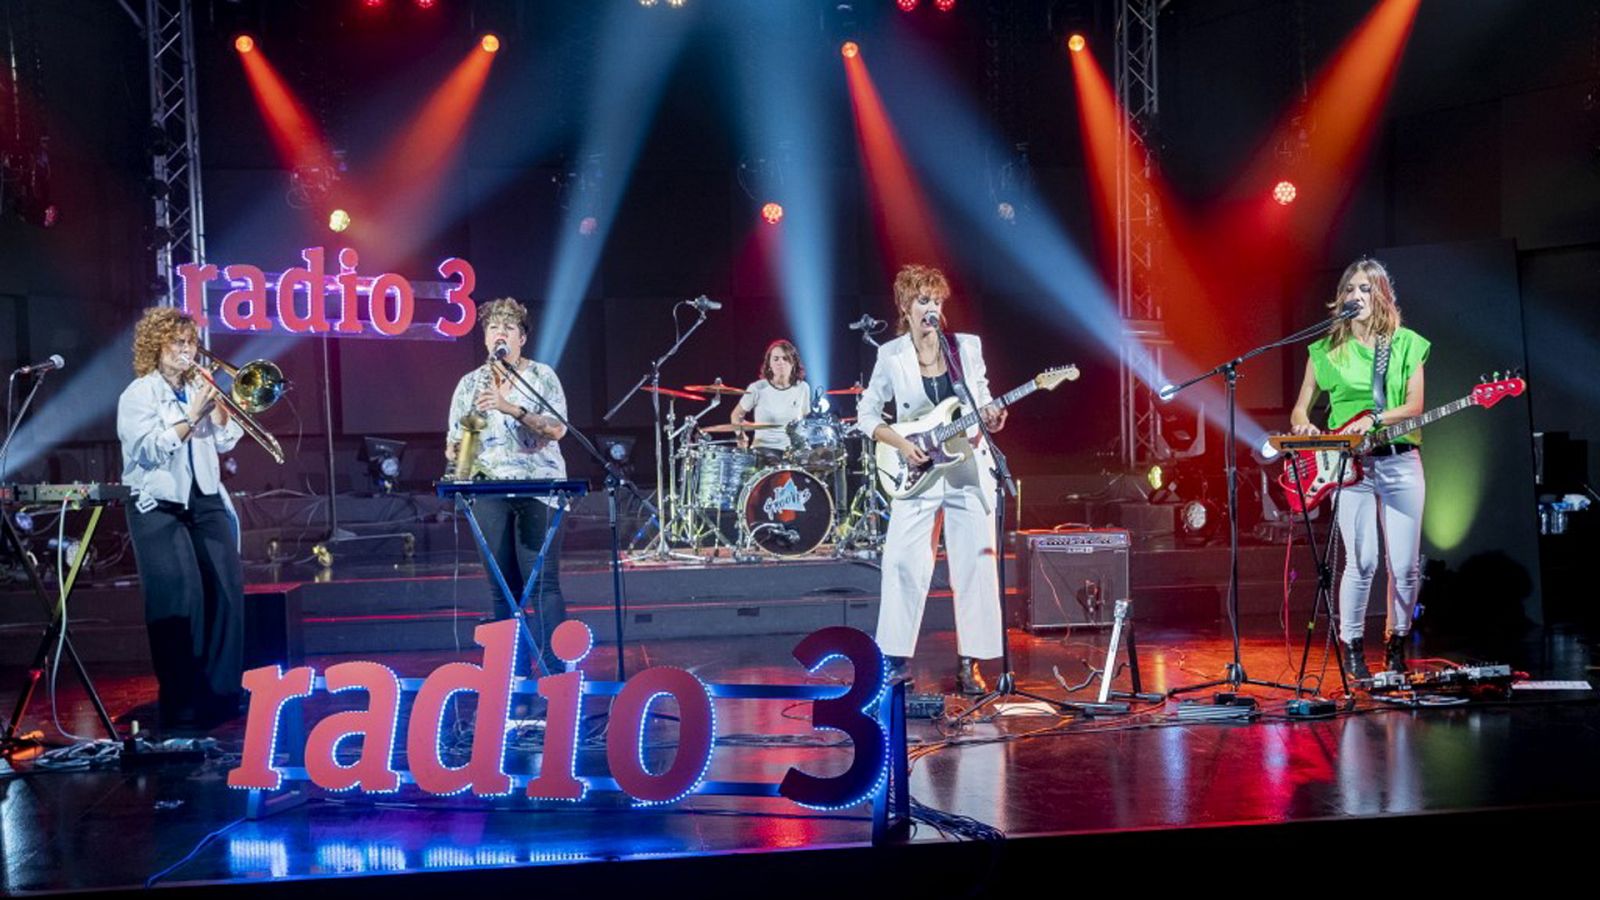 Los conciertos de Radio 3 - The Grooves